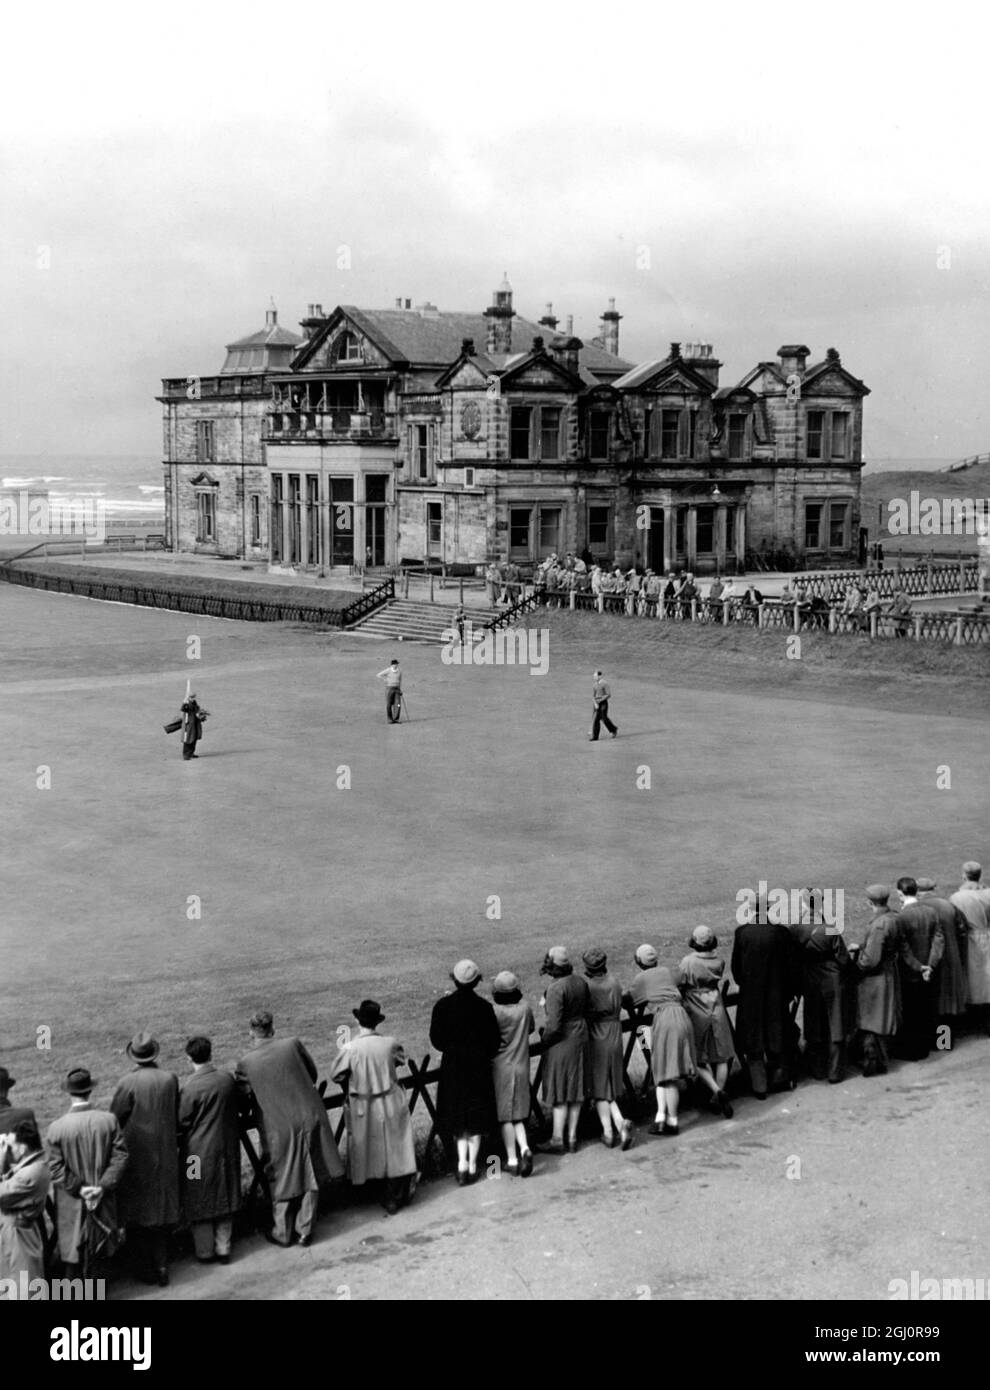 St Andrews , das Hauptquartier jedes Golfer Grey Clubhauses im Hintergrund, Spieler und Caddy auf dem Grün des 18. Lochs auf dem Old Course. Ein Turnier ist eins und die Galerie hält den Atem an und beobachtet den 1. oktober 1949 Stockfoto